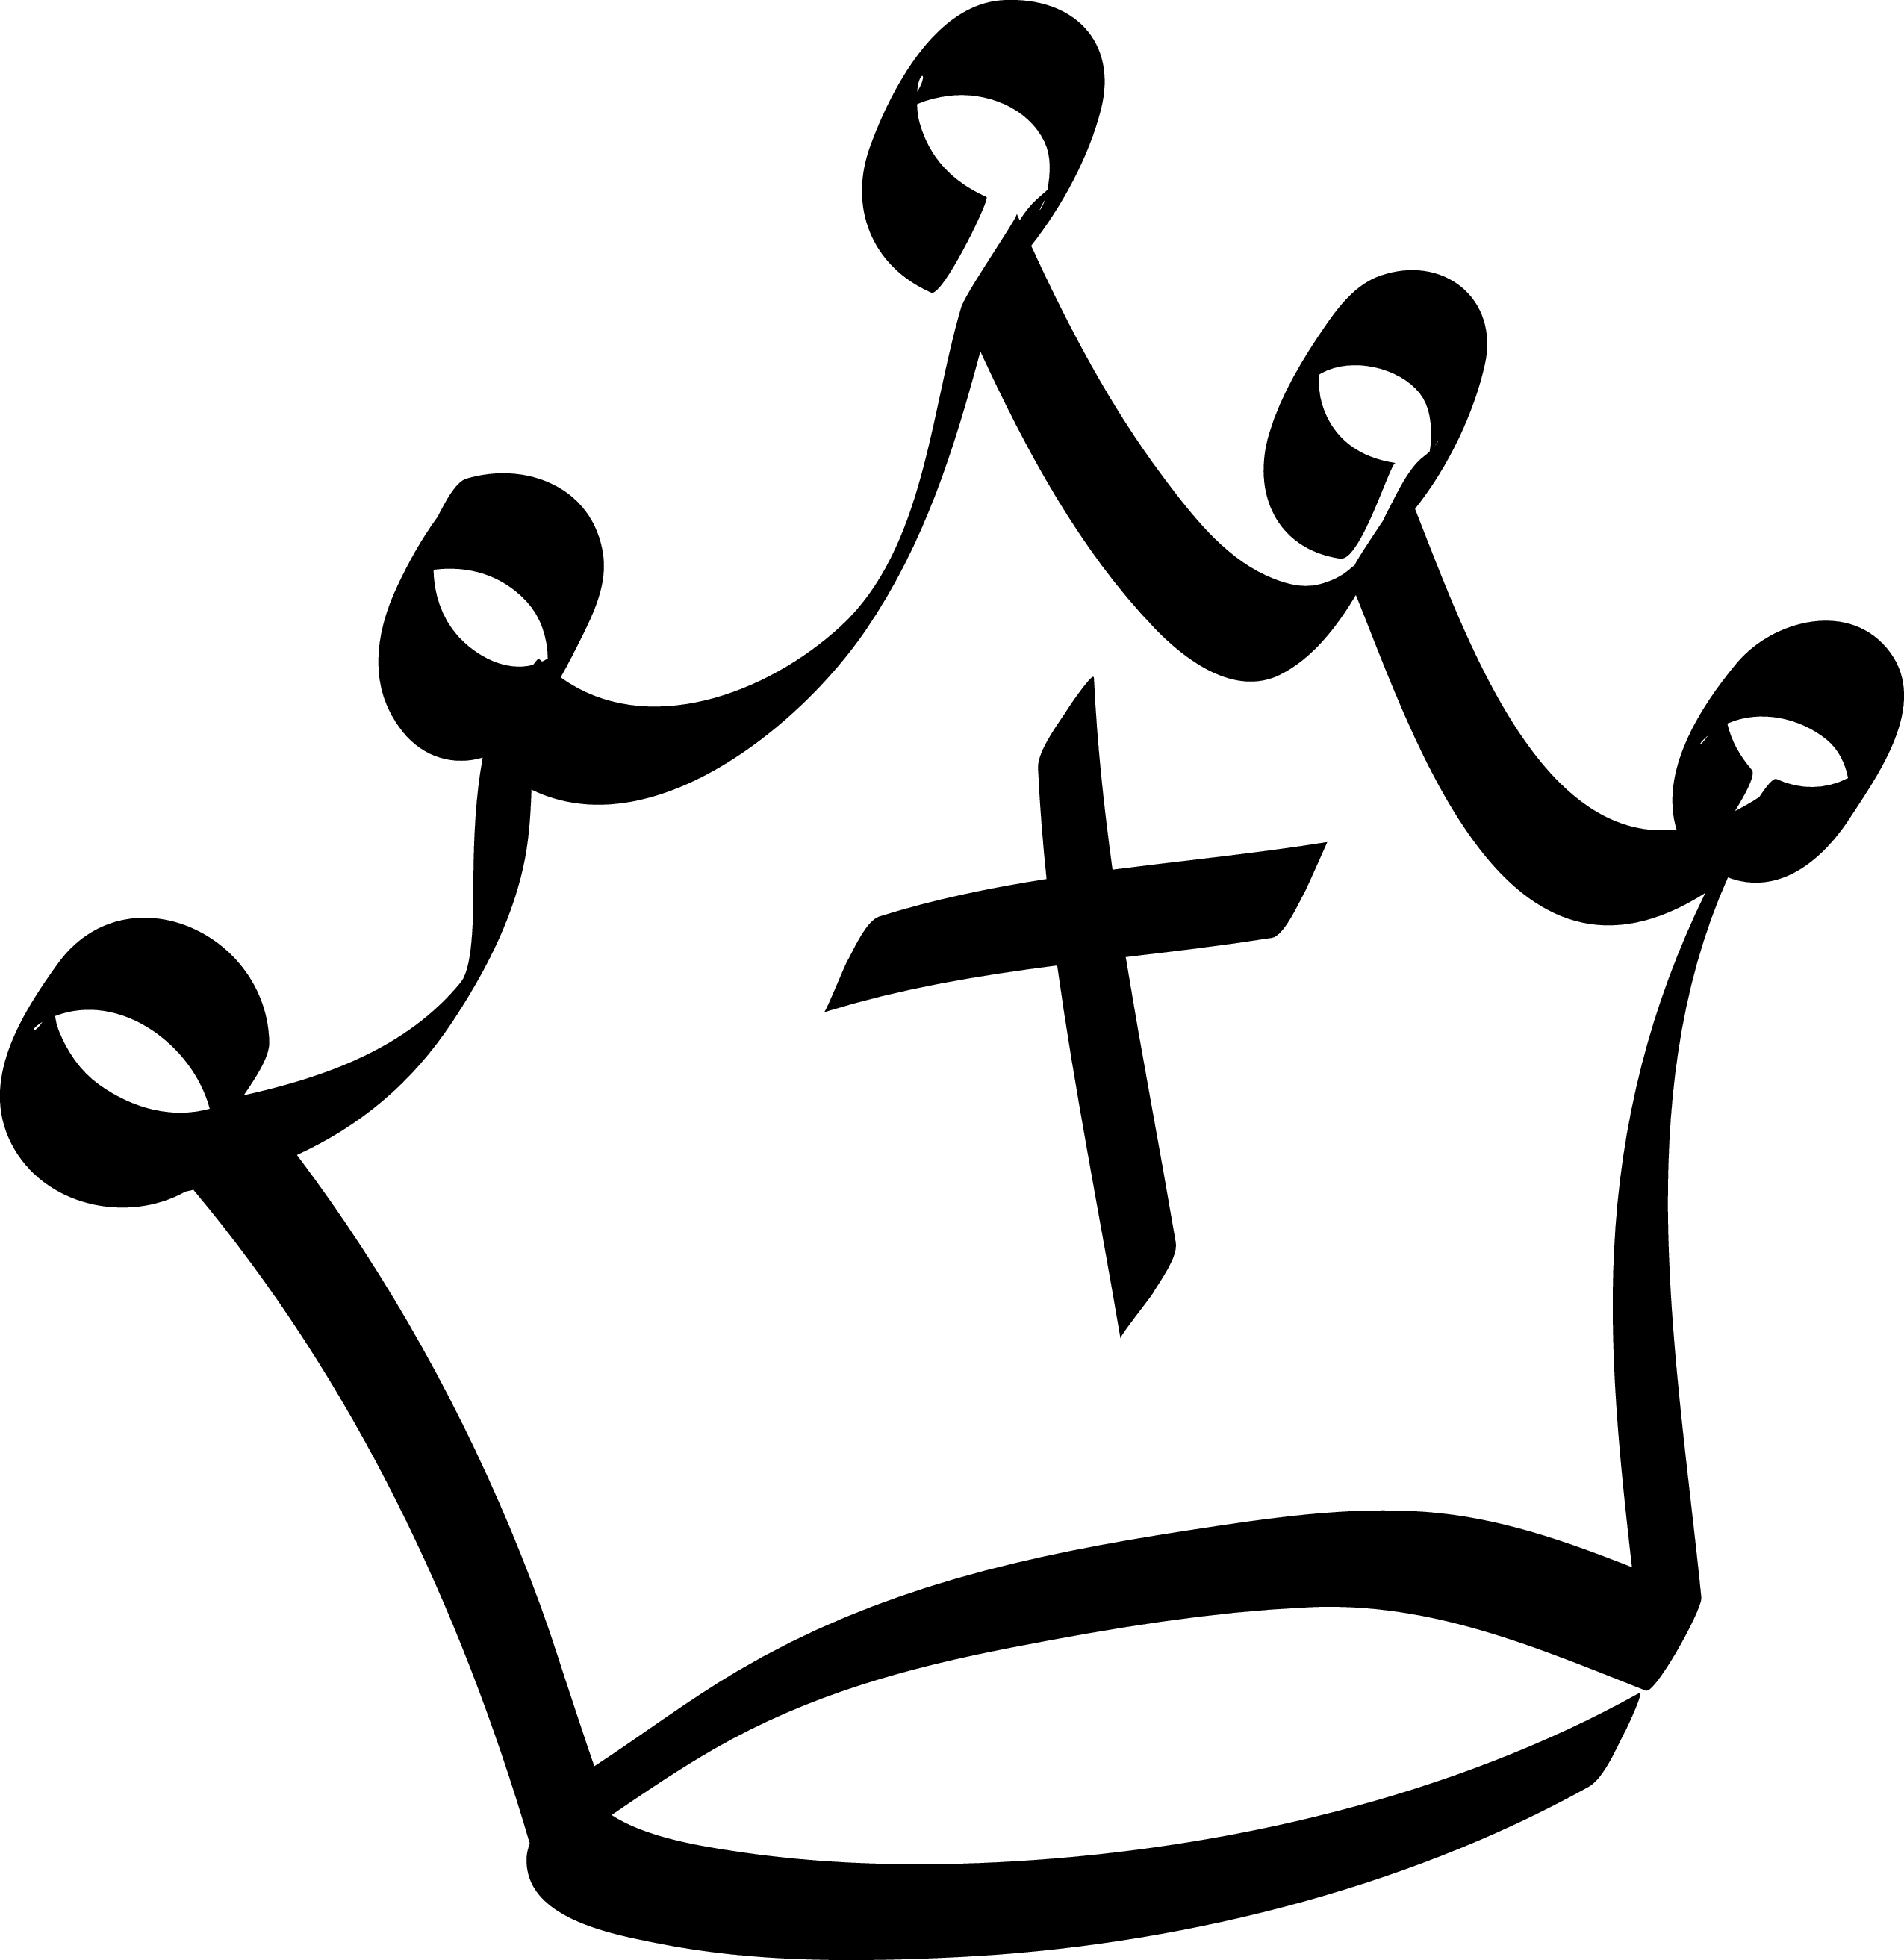 Evil crown clipart 